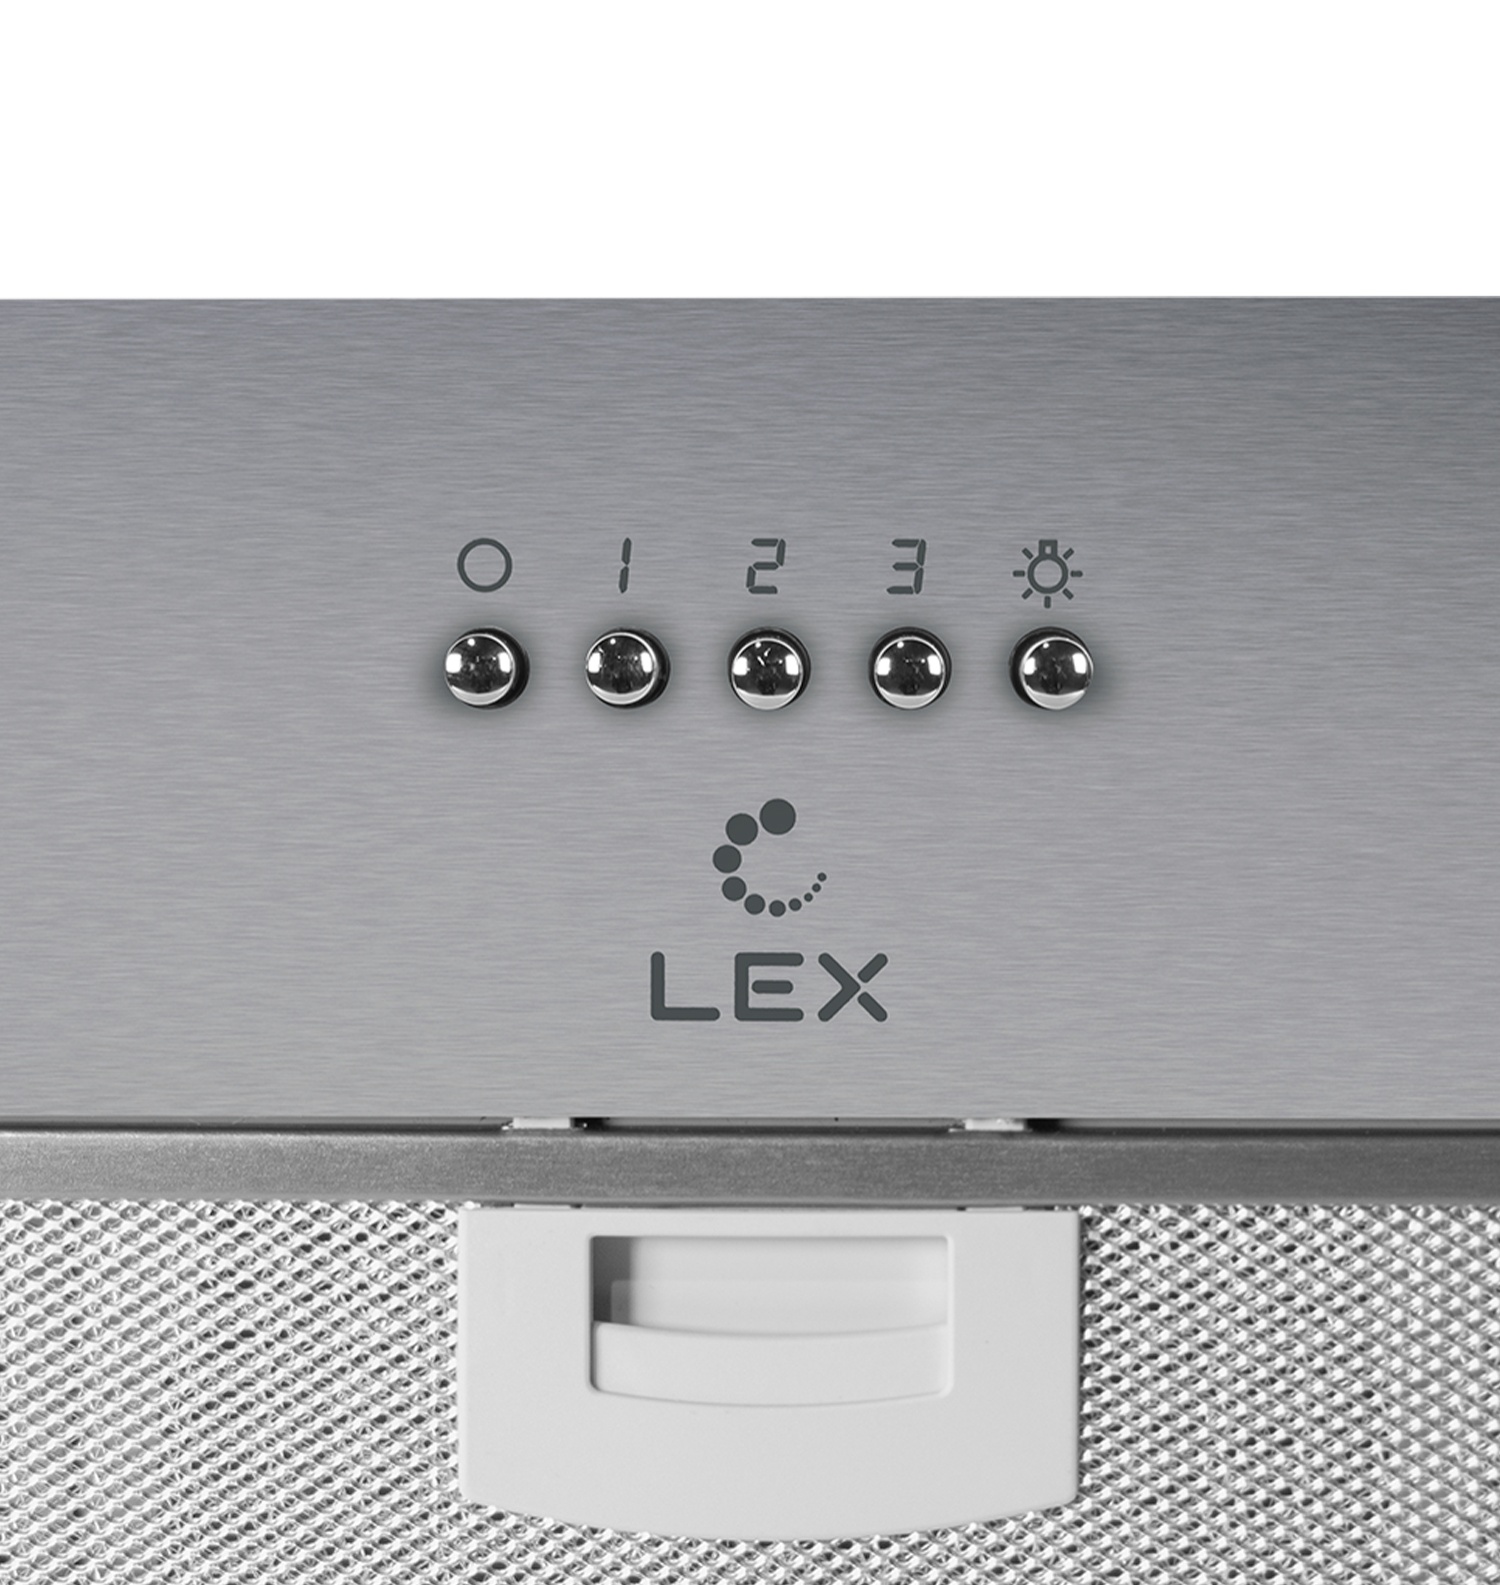 Встраиваемая кухонная вытяжка LEX Ghost 600 Inox